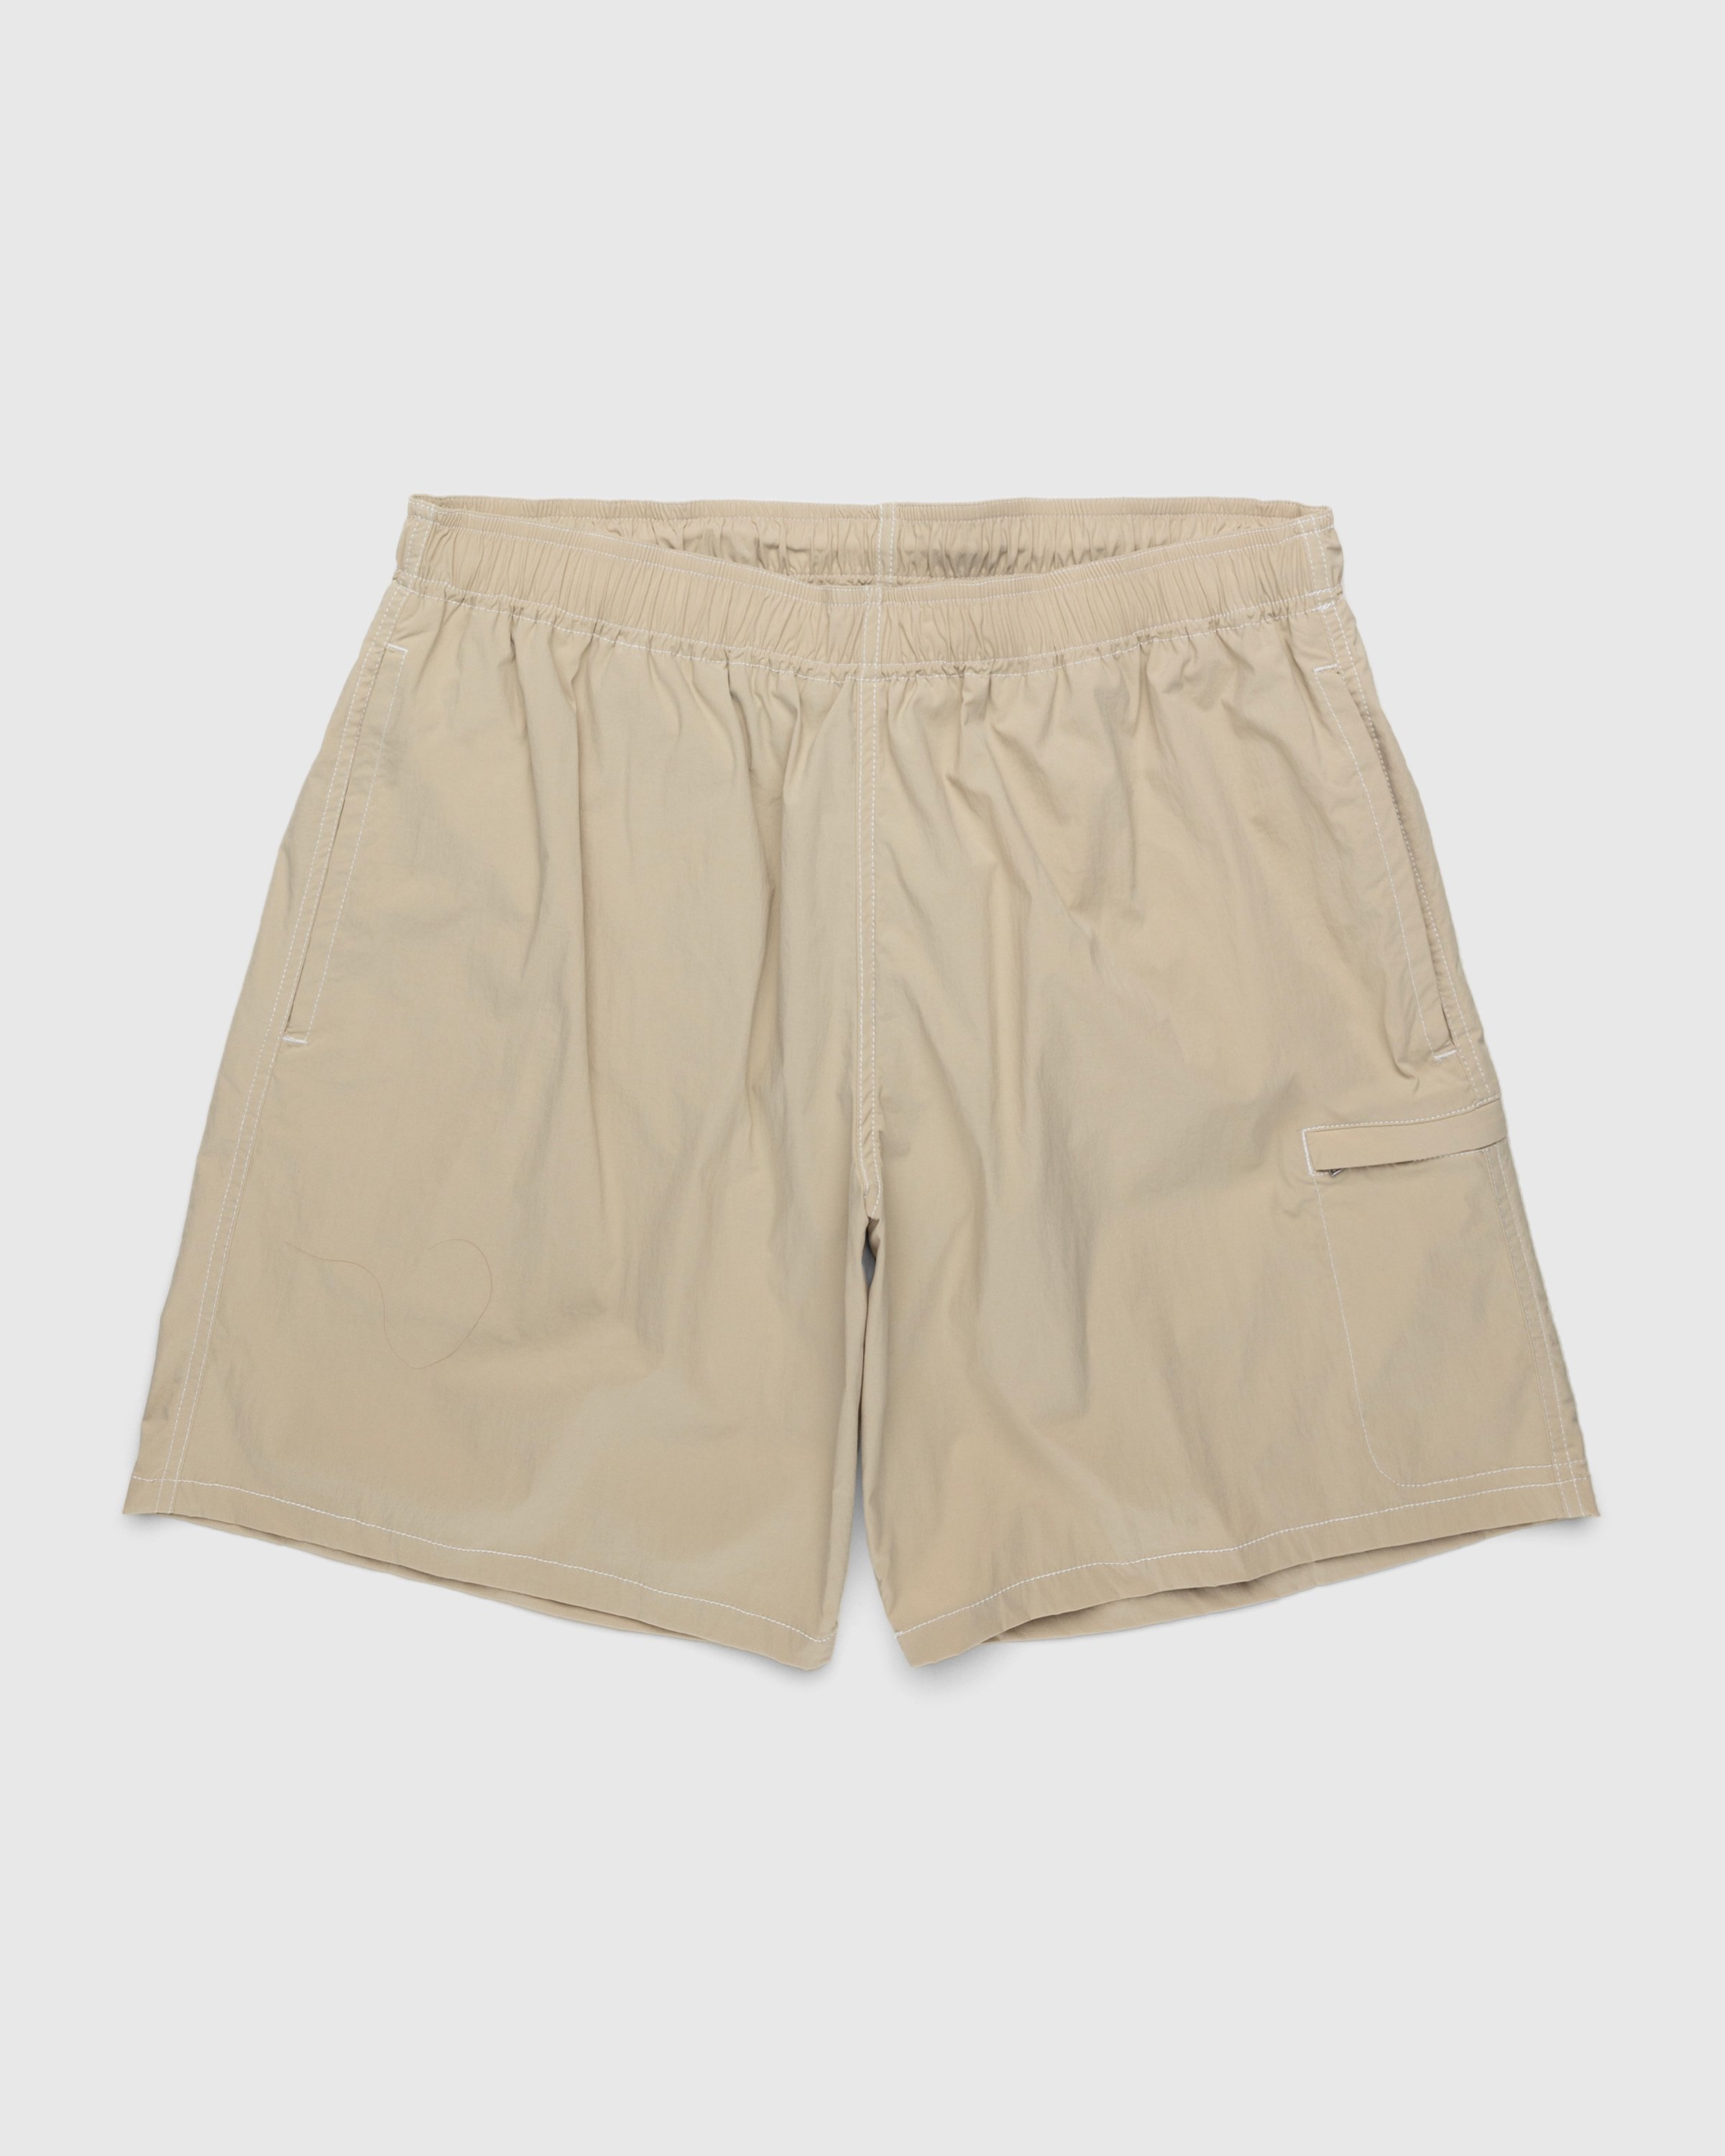 Highsnobiety - Side Cargo Shorts Light Beige - Clothing - Beige - Image 1